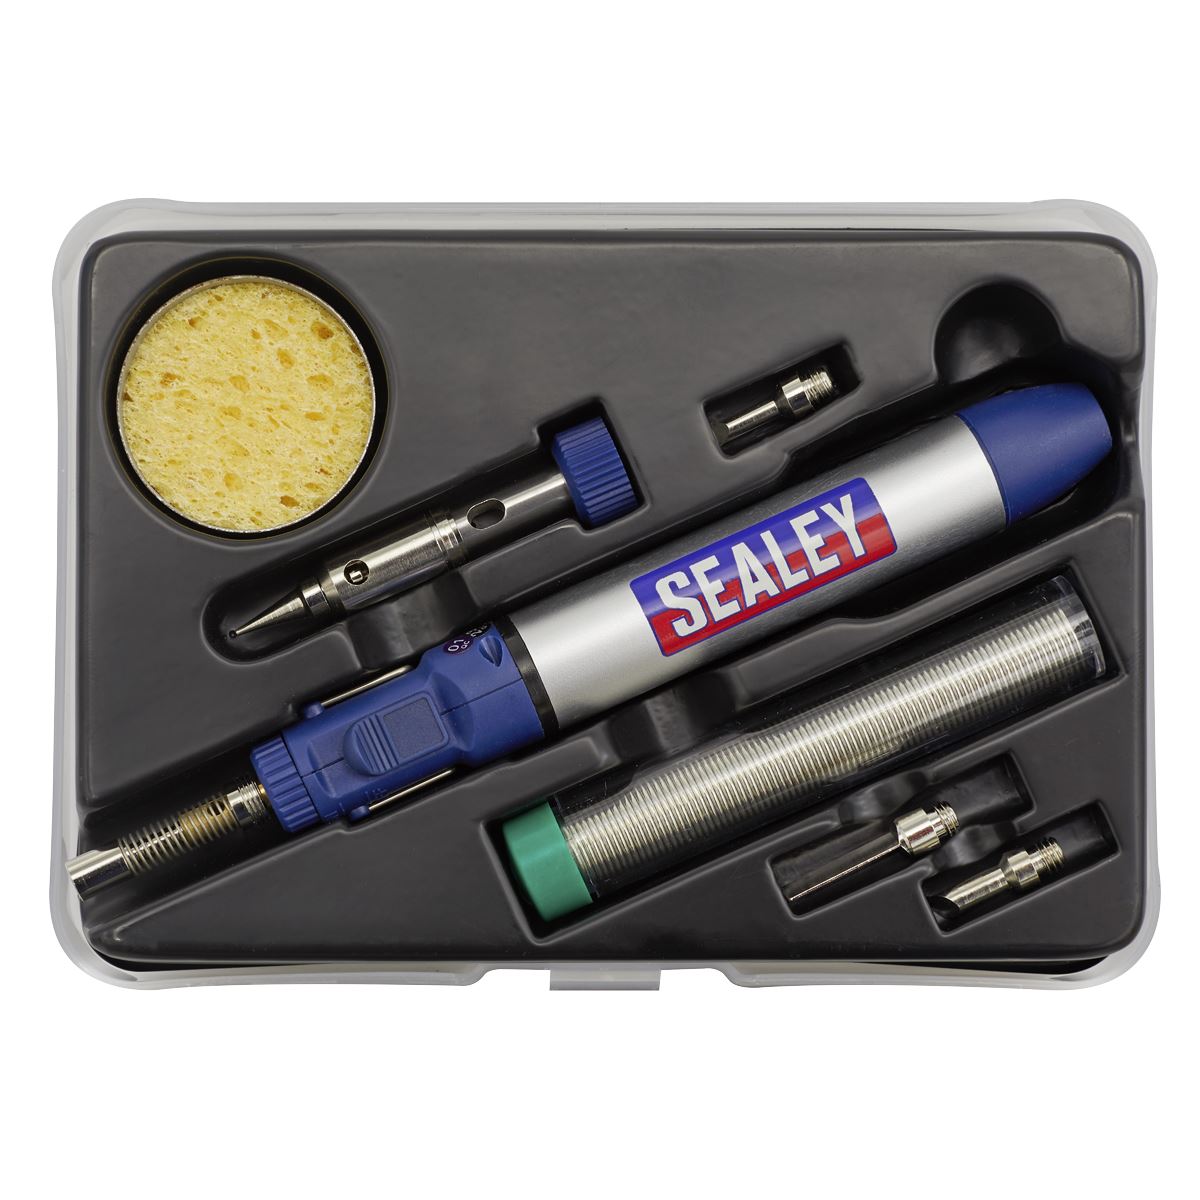 Sealey Premier Micro Butane Torch Kit 7pc